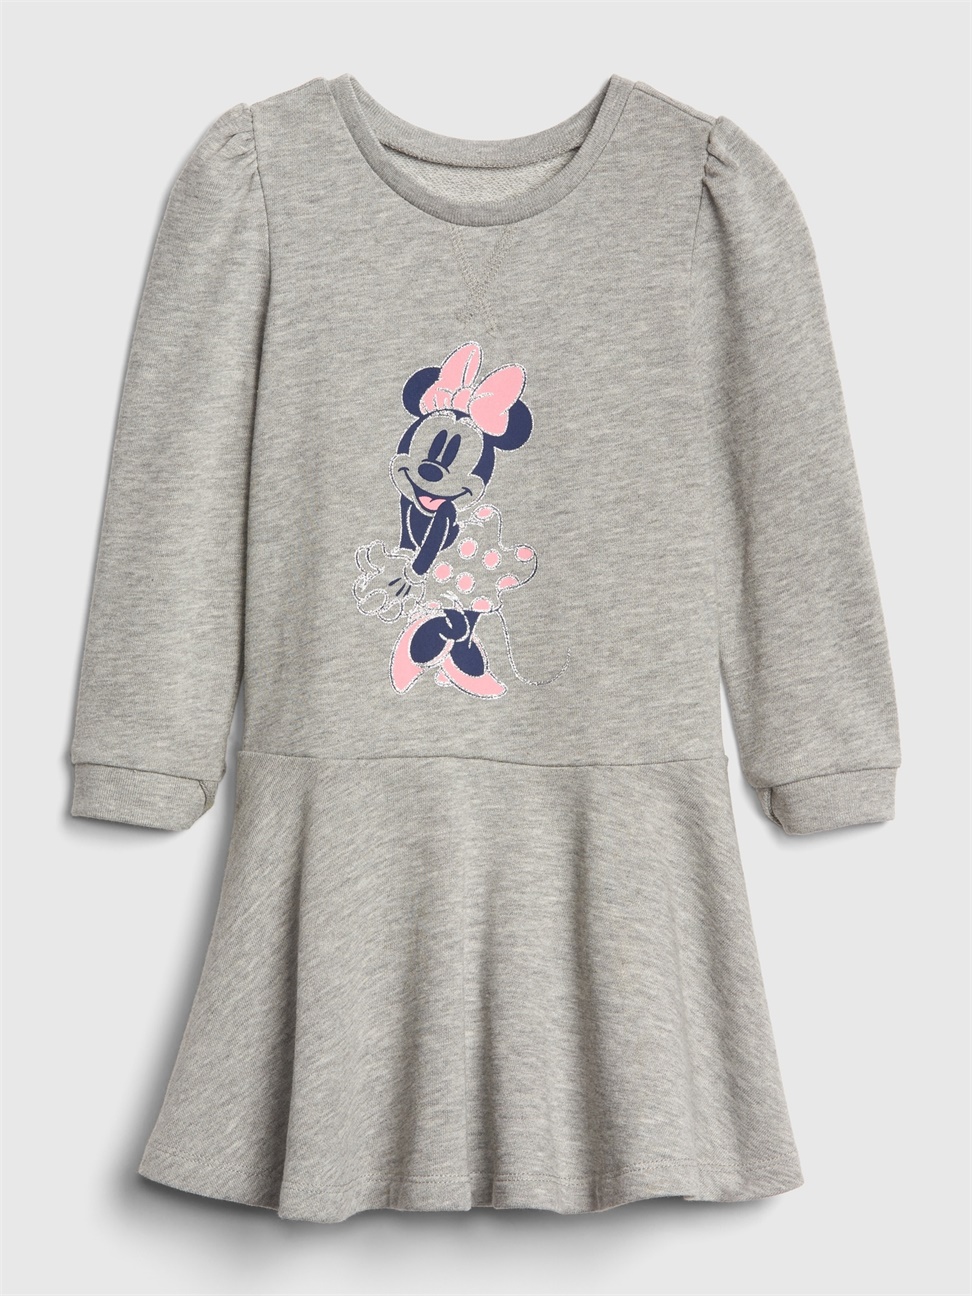 女幼童裝|Gap x Disney迪士尼聯名 米妮長袖洋裝-米妮老鼠圖案